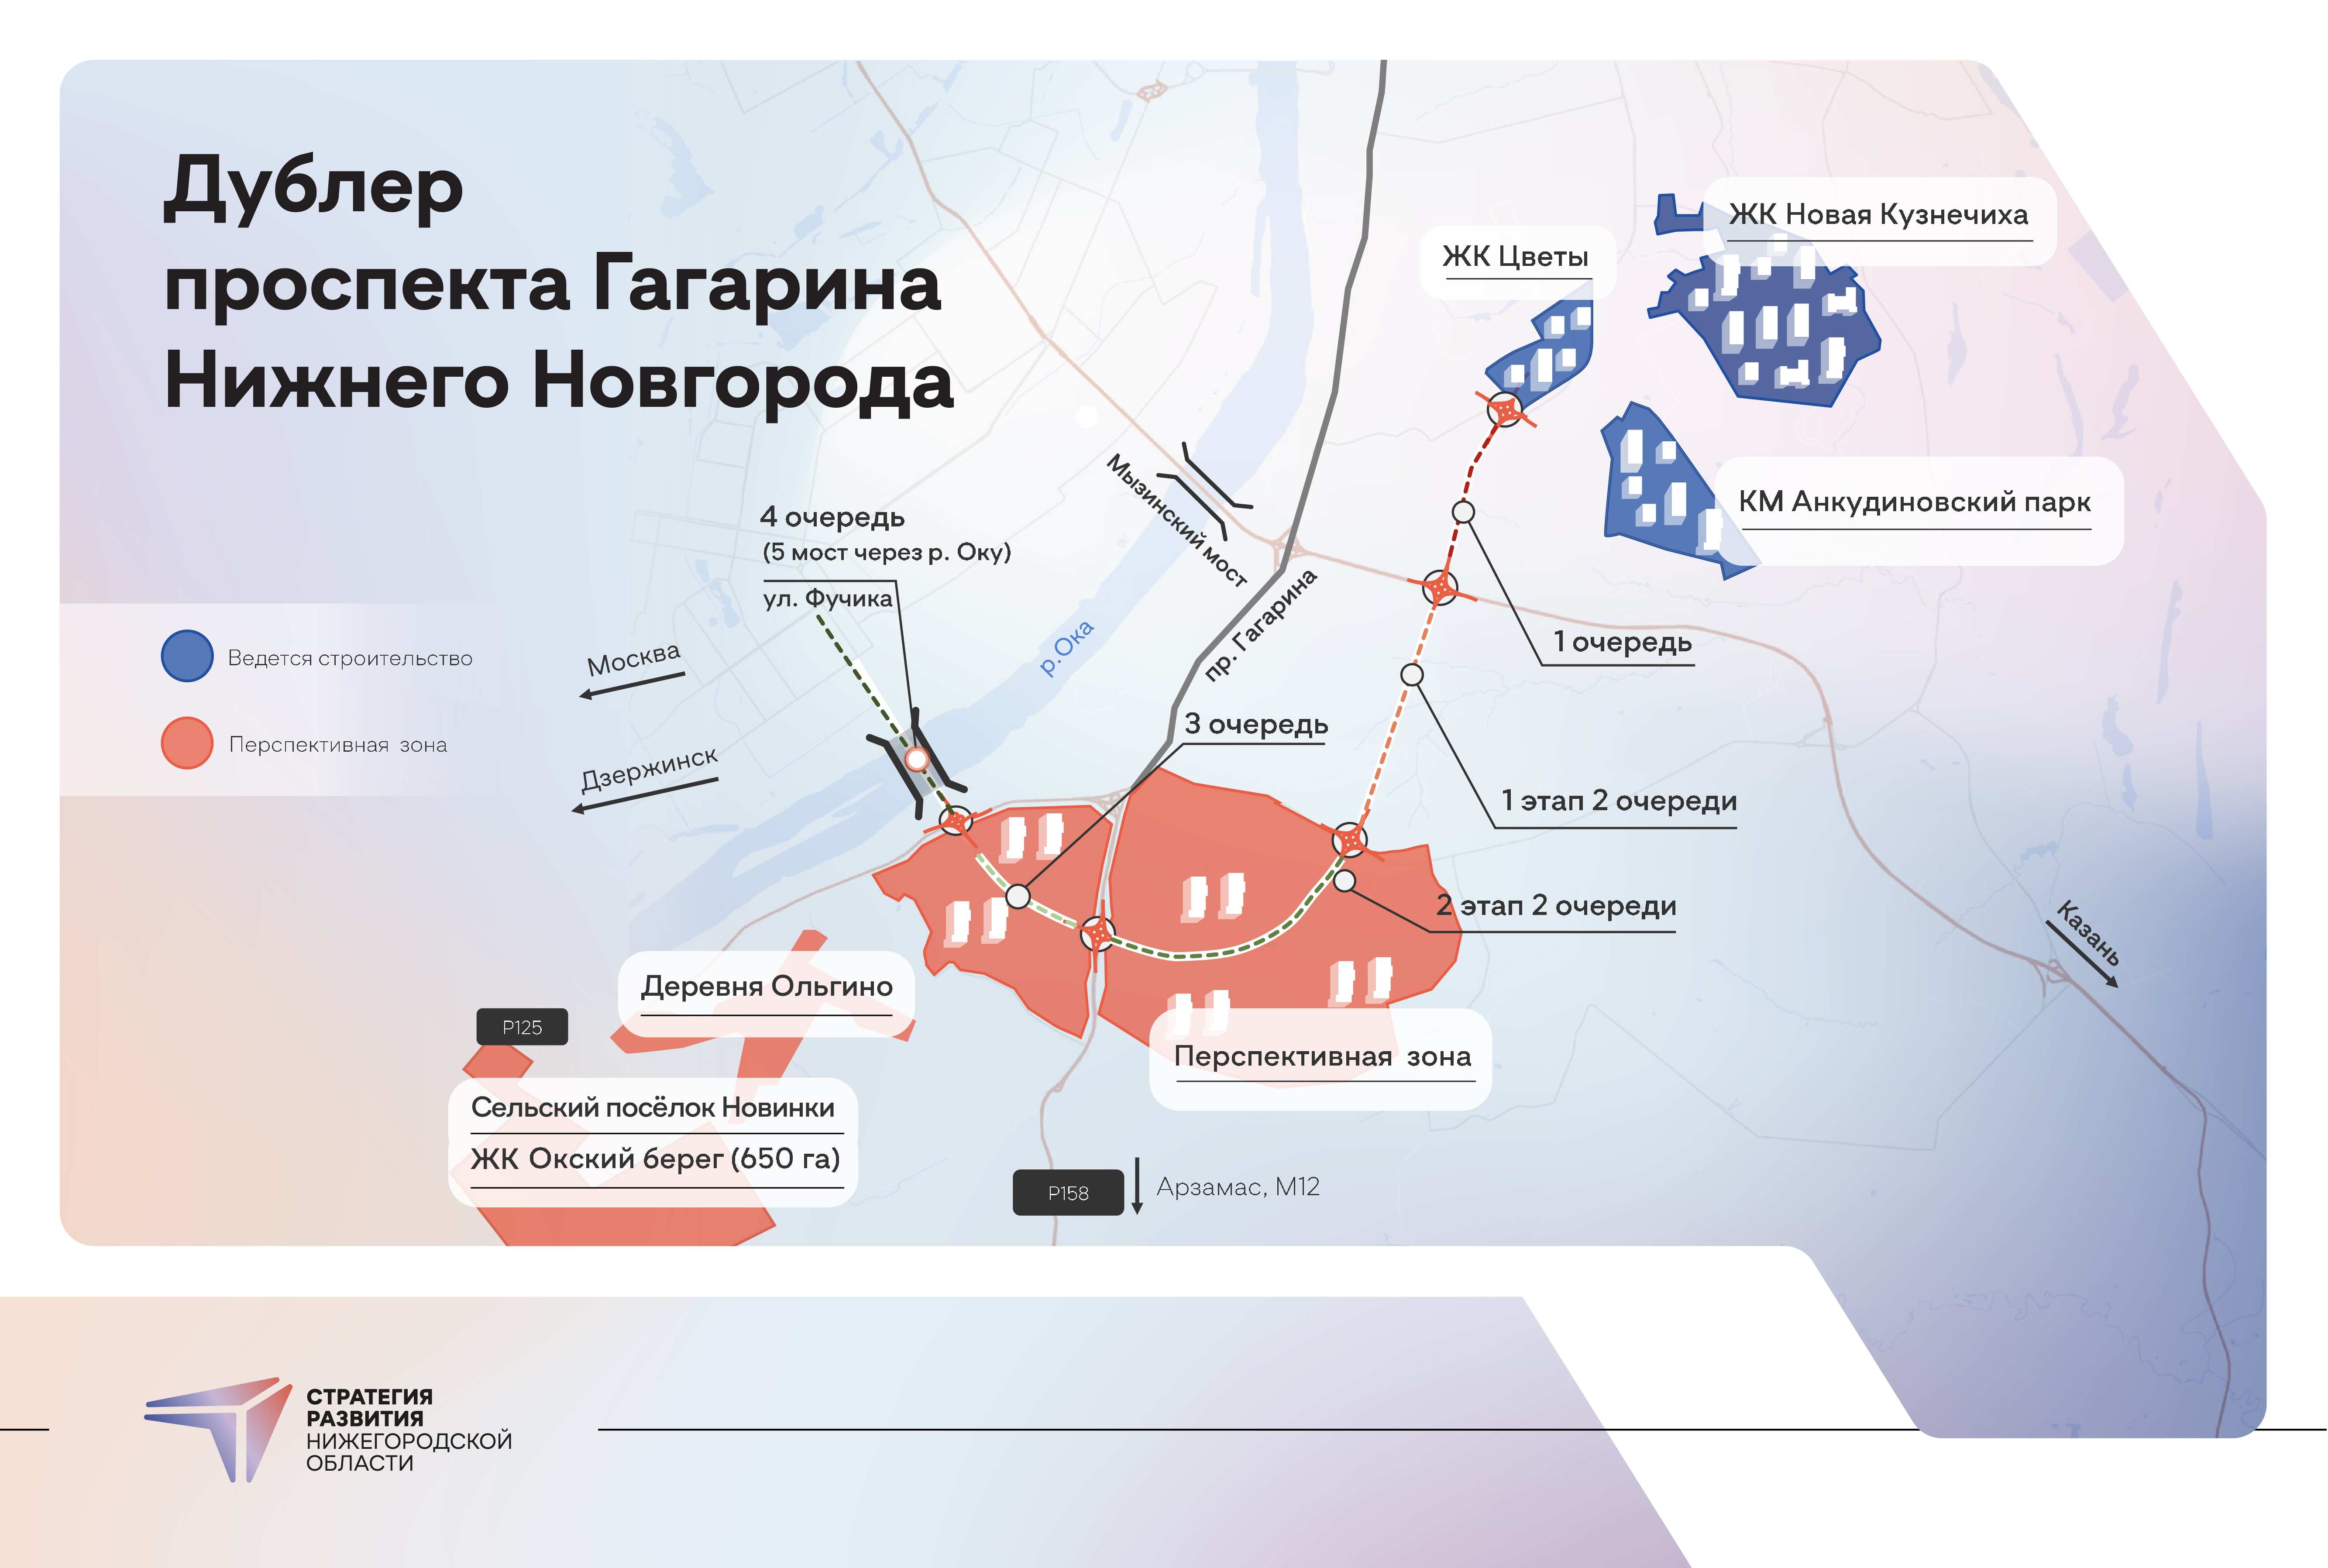 Опубликована схема будущего дублера проспекта Гагарина в Нижнем Новгороде